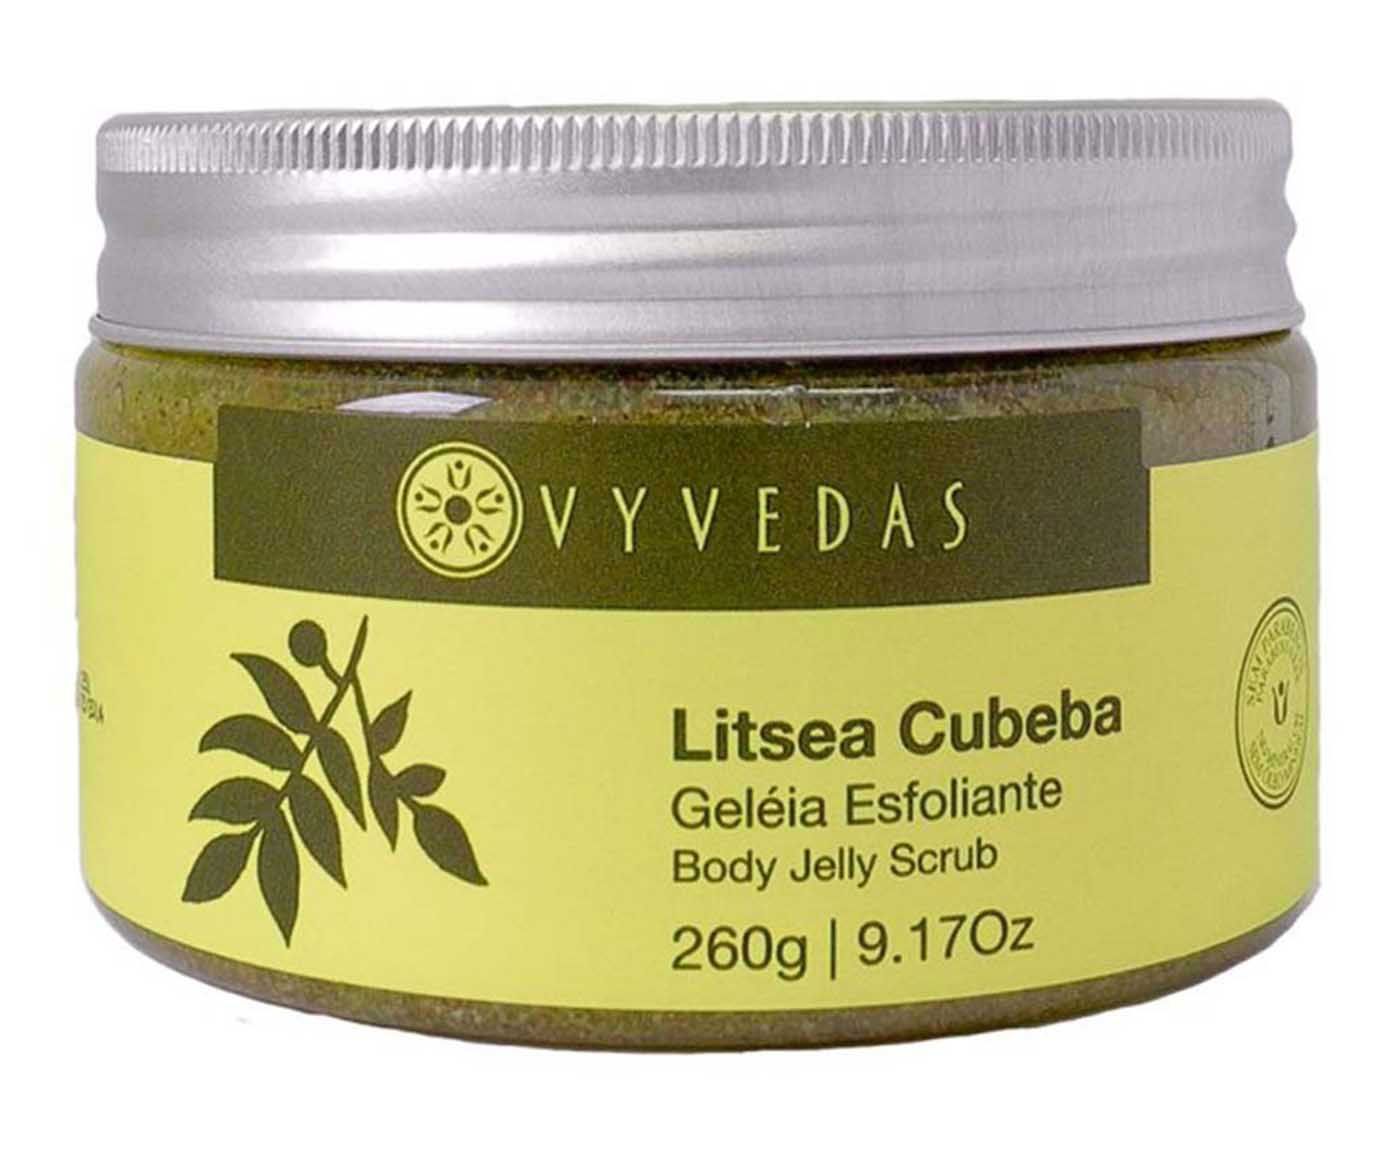 Geleia esfoliante litsea cubeba - 260g | Westwing.com.br